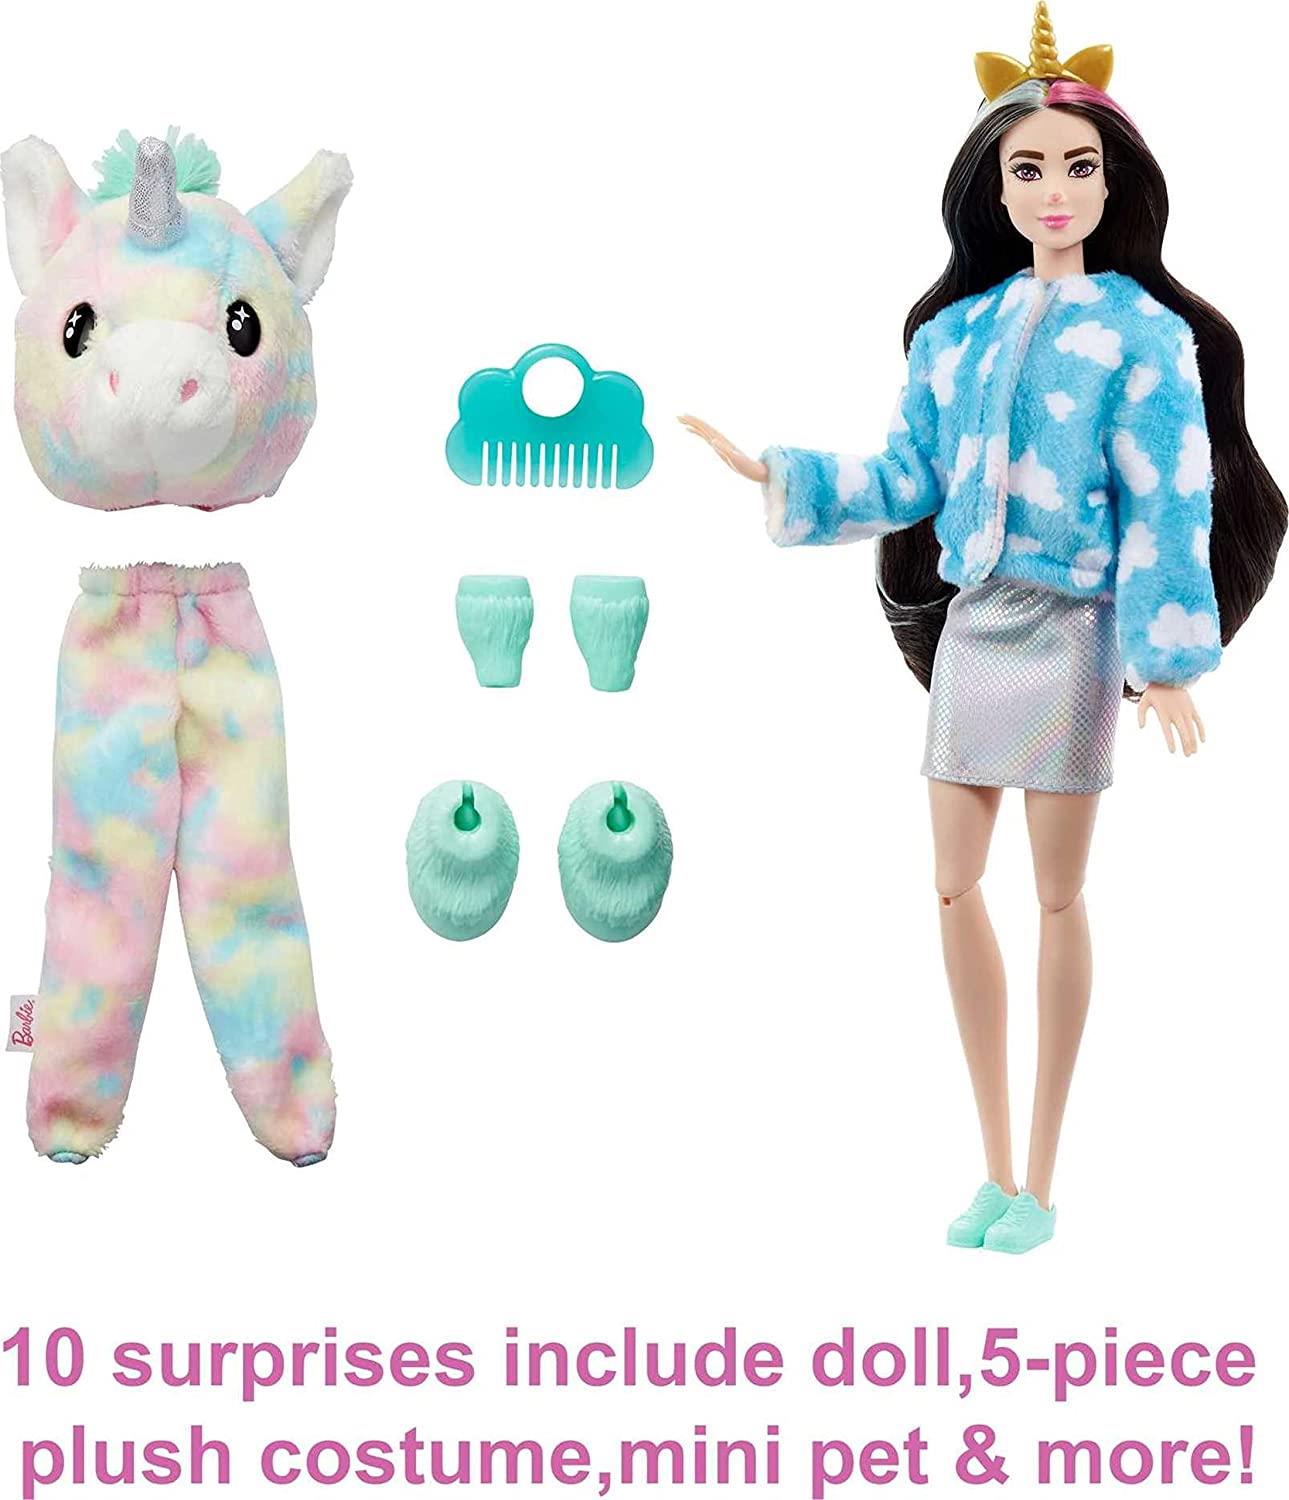 Barbie Cutie Reveal Doll with Unicorn Plush by Barbie - UKBuyZone